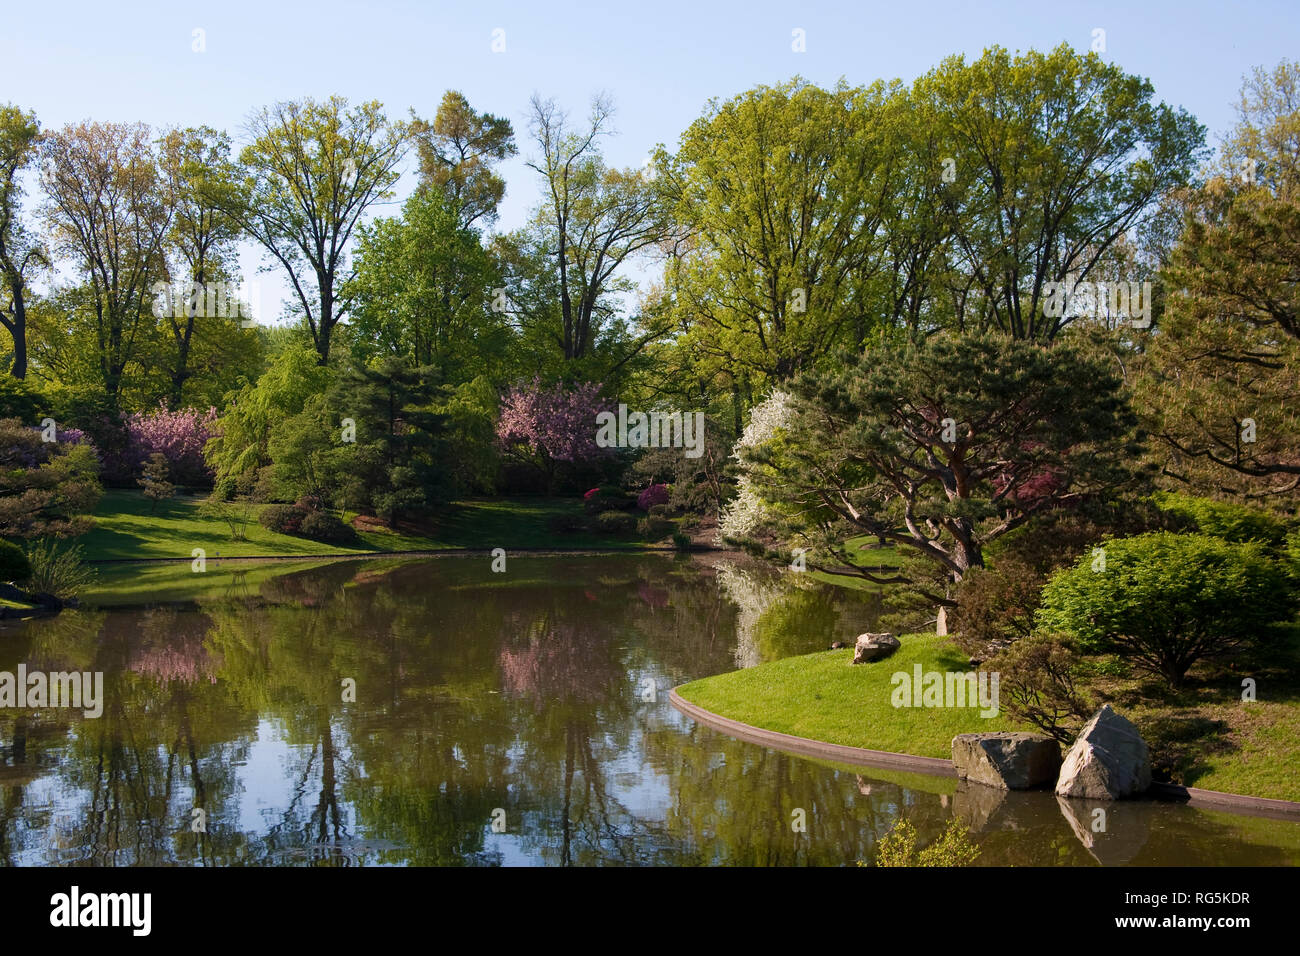 65021-03510 Japanische Gärten im Frühjahr, Missouri Botanical Gardens, St. Louis, MO Stockfoto